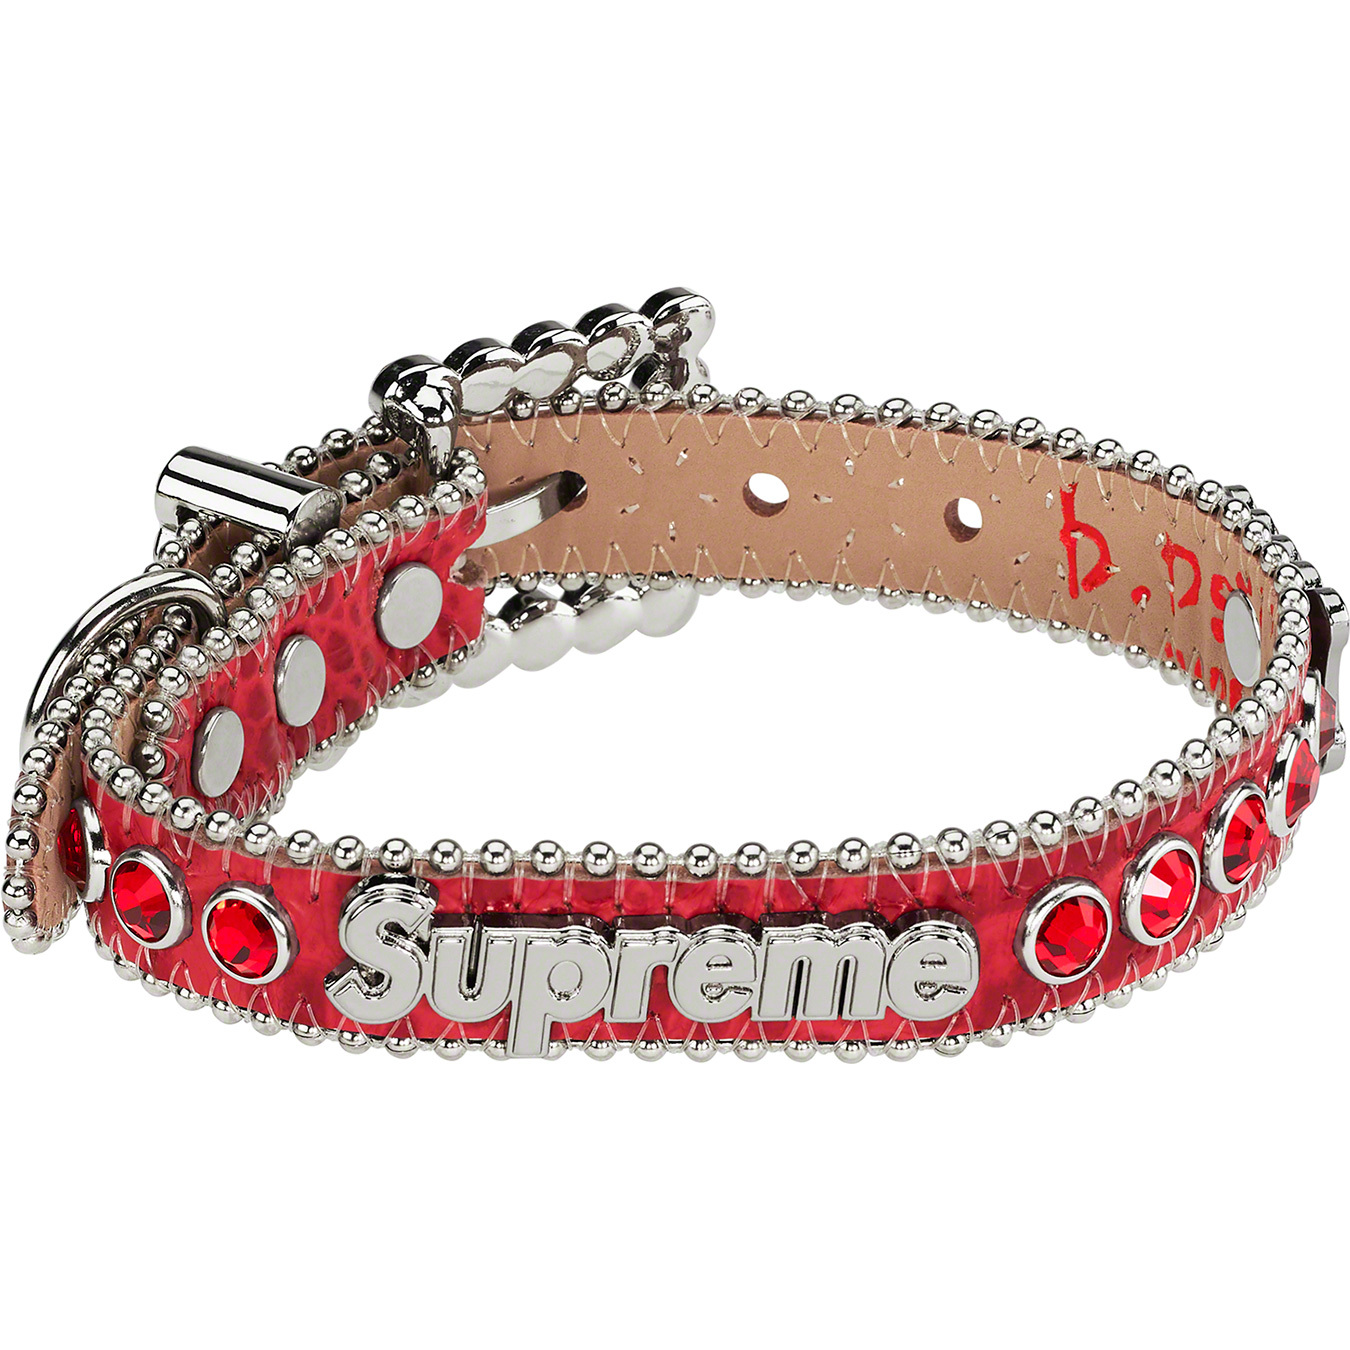 Supreme®/B.B. Simon® Studded Dog Collar